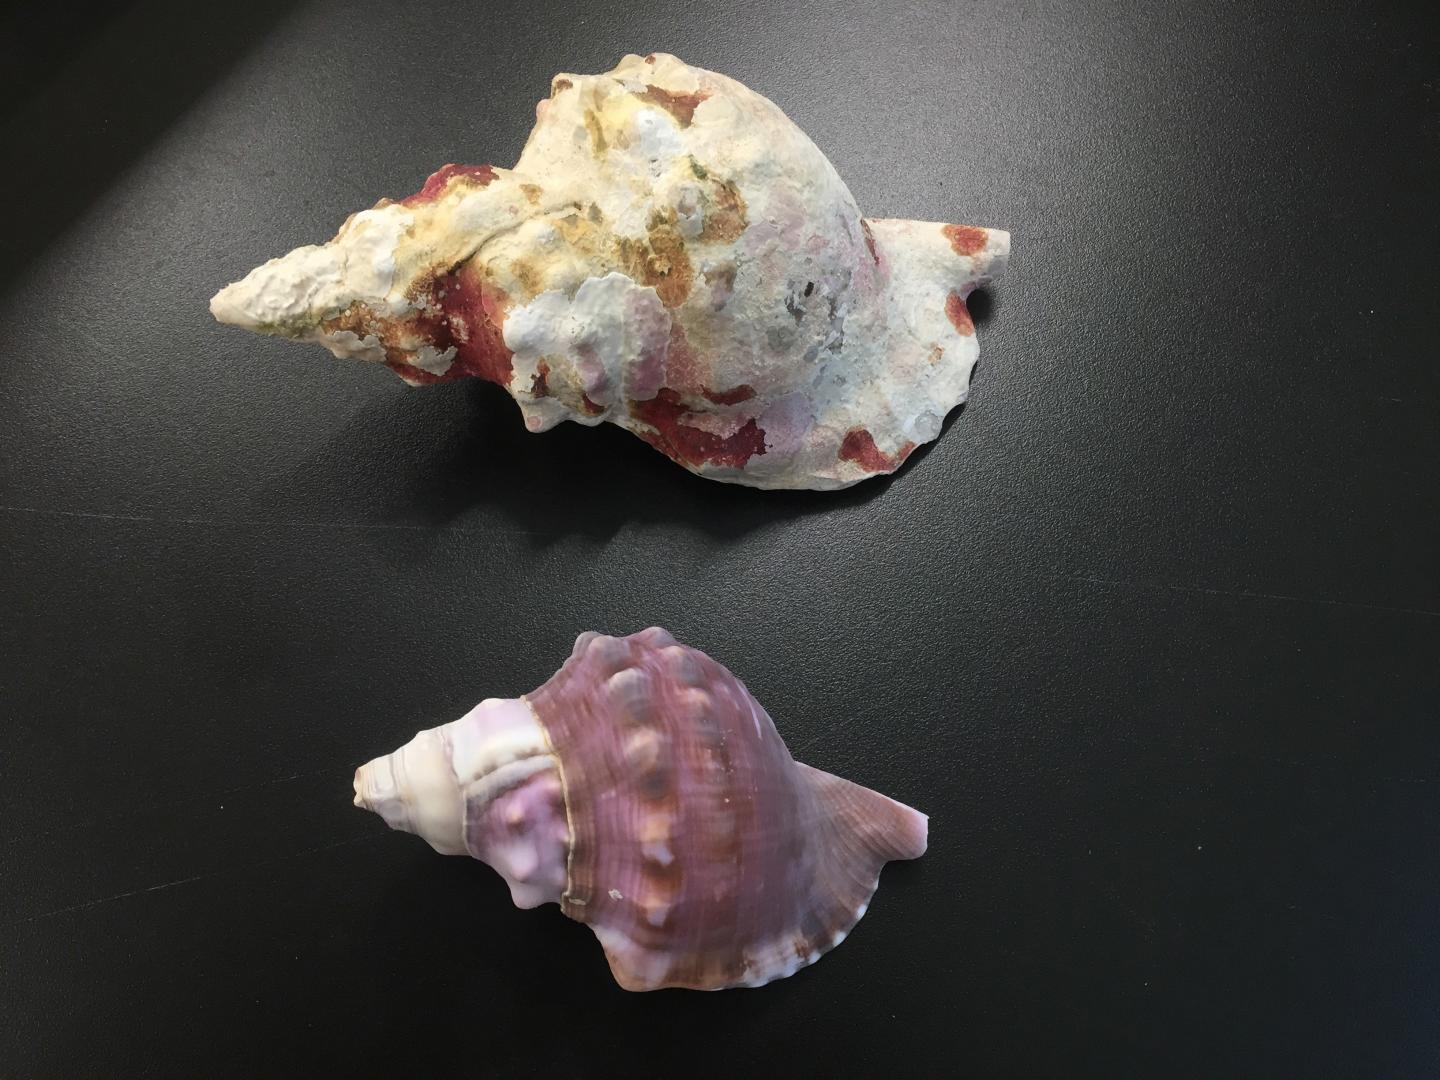 Shells comparison